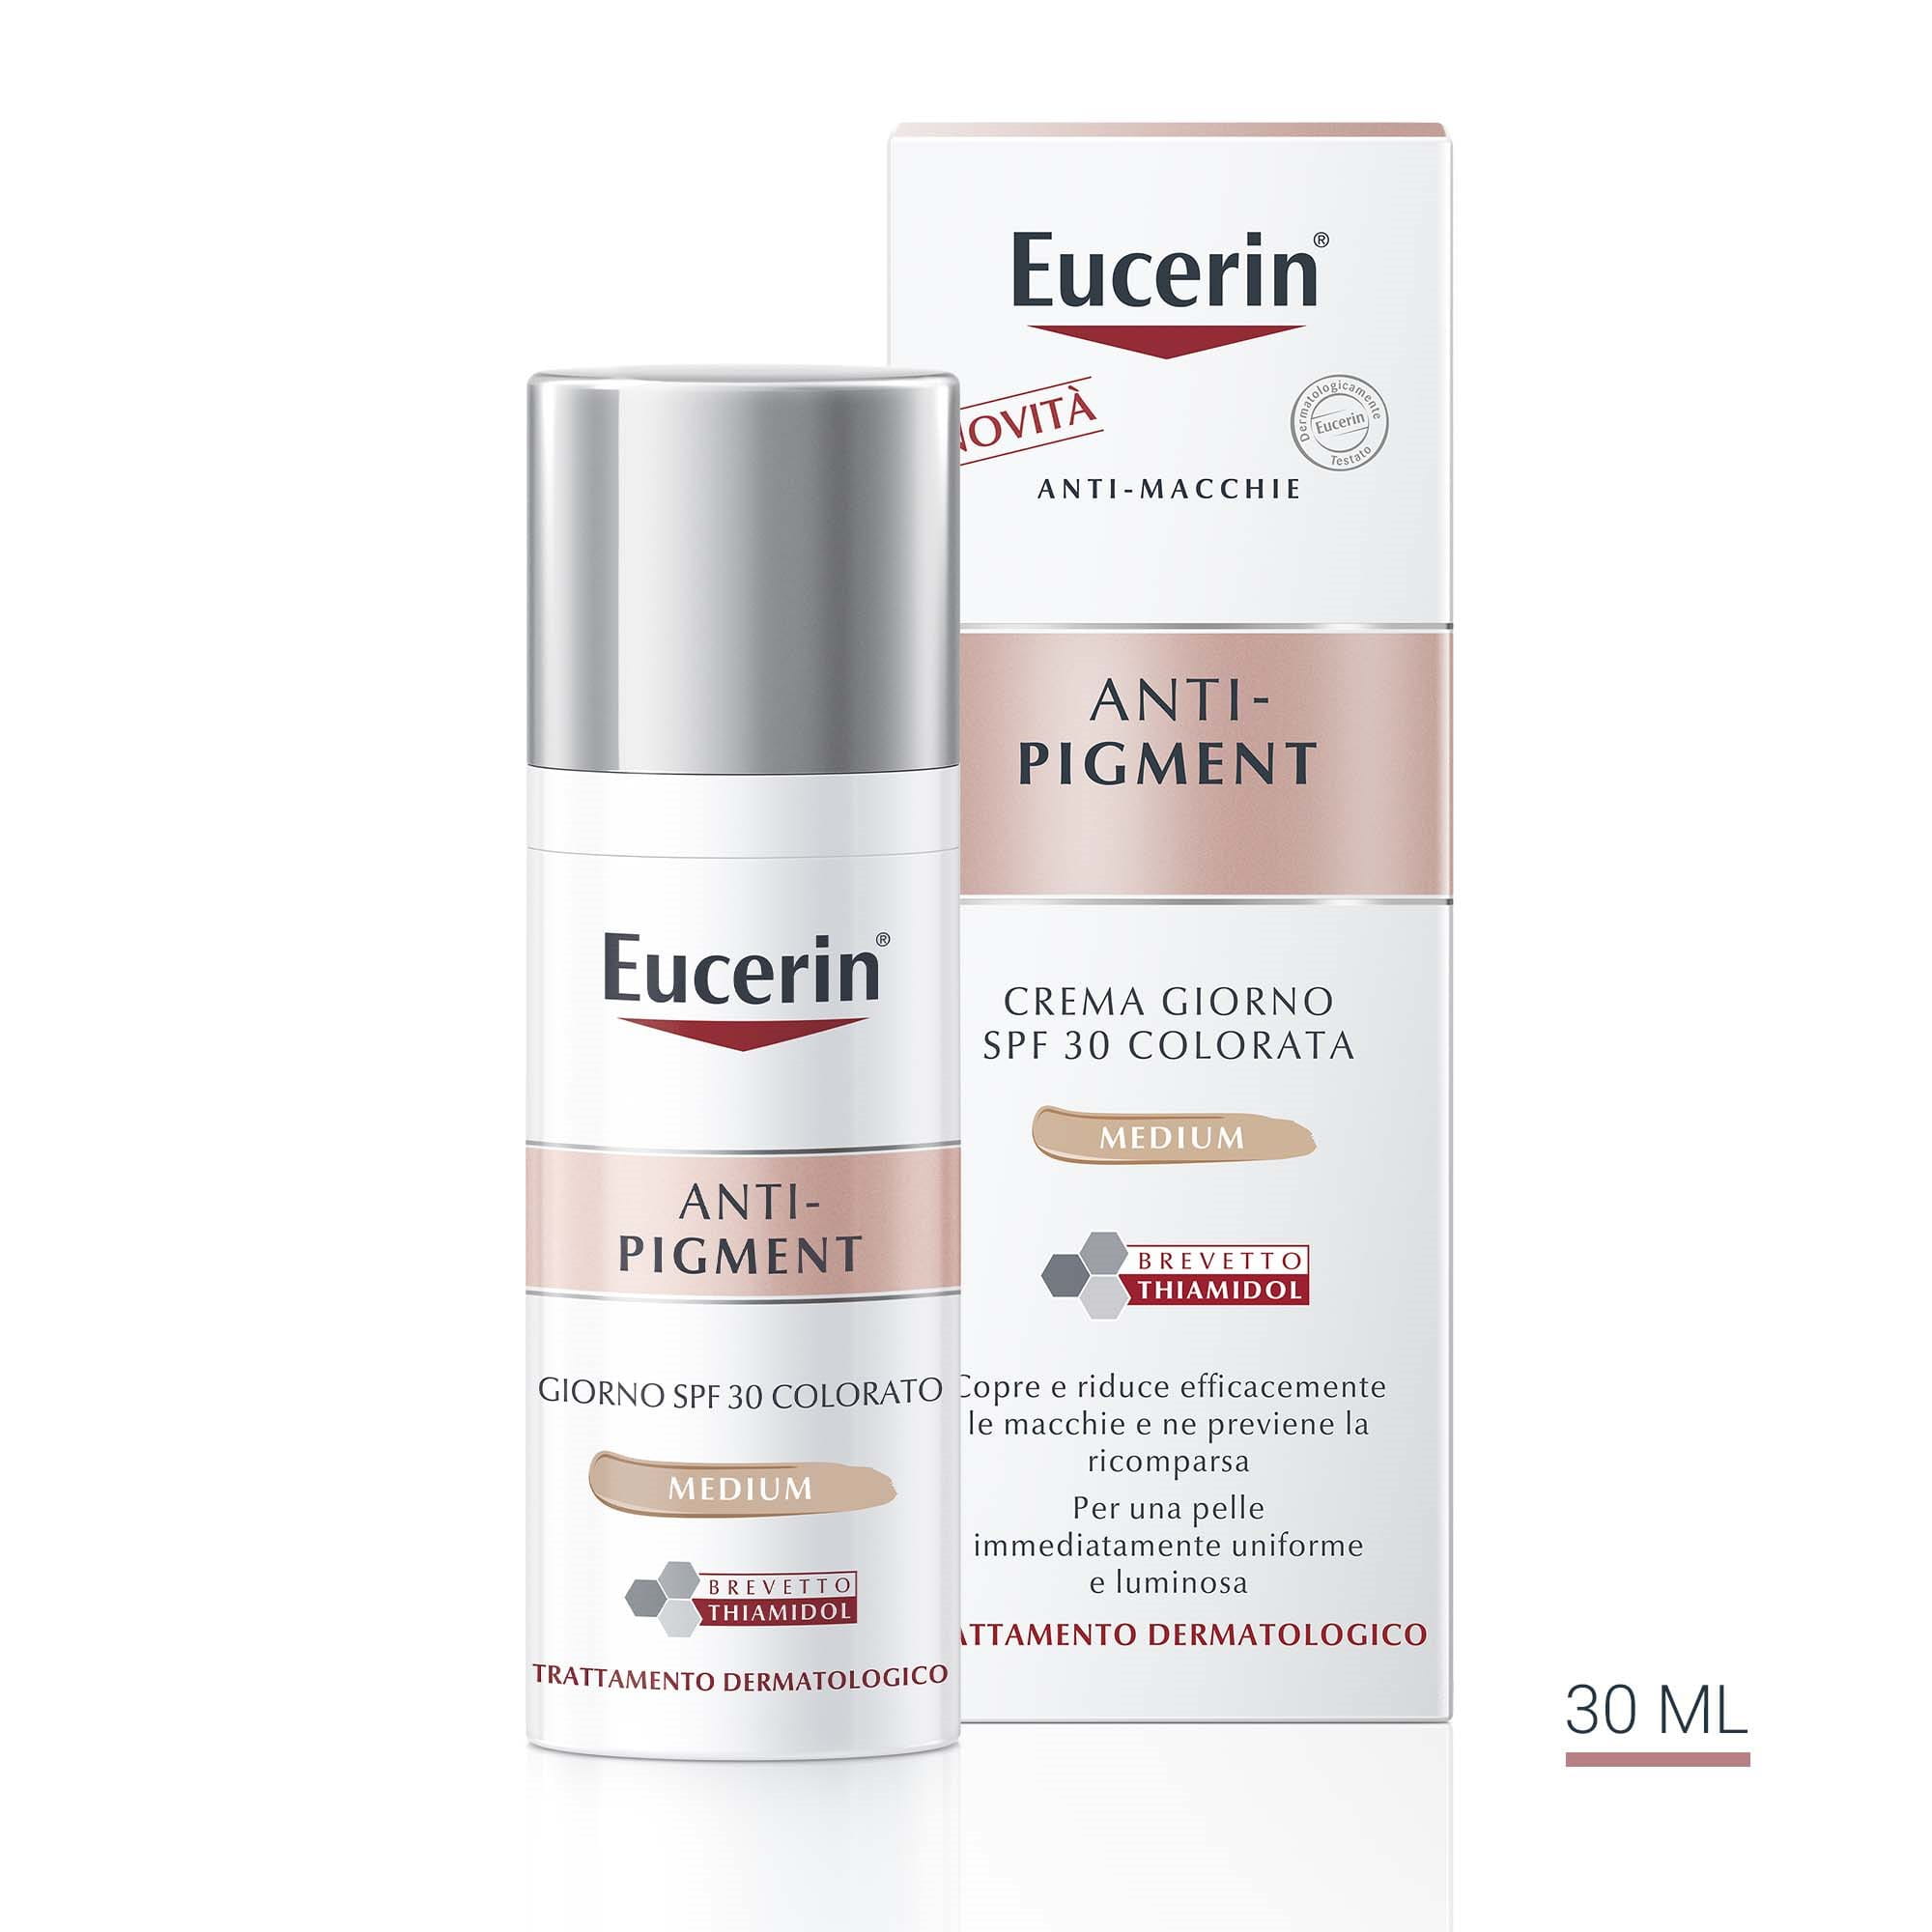 Eucerin Anti-Pigment Crema Giorno SPF 30 Colorata Medium